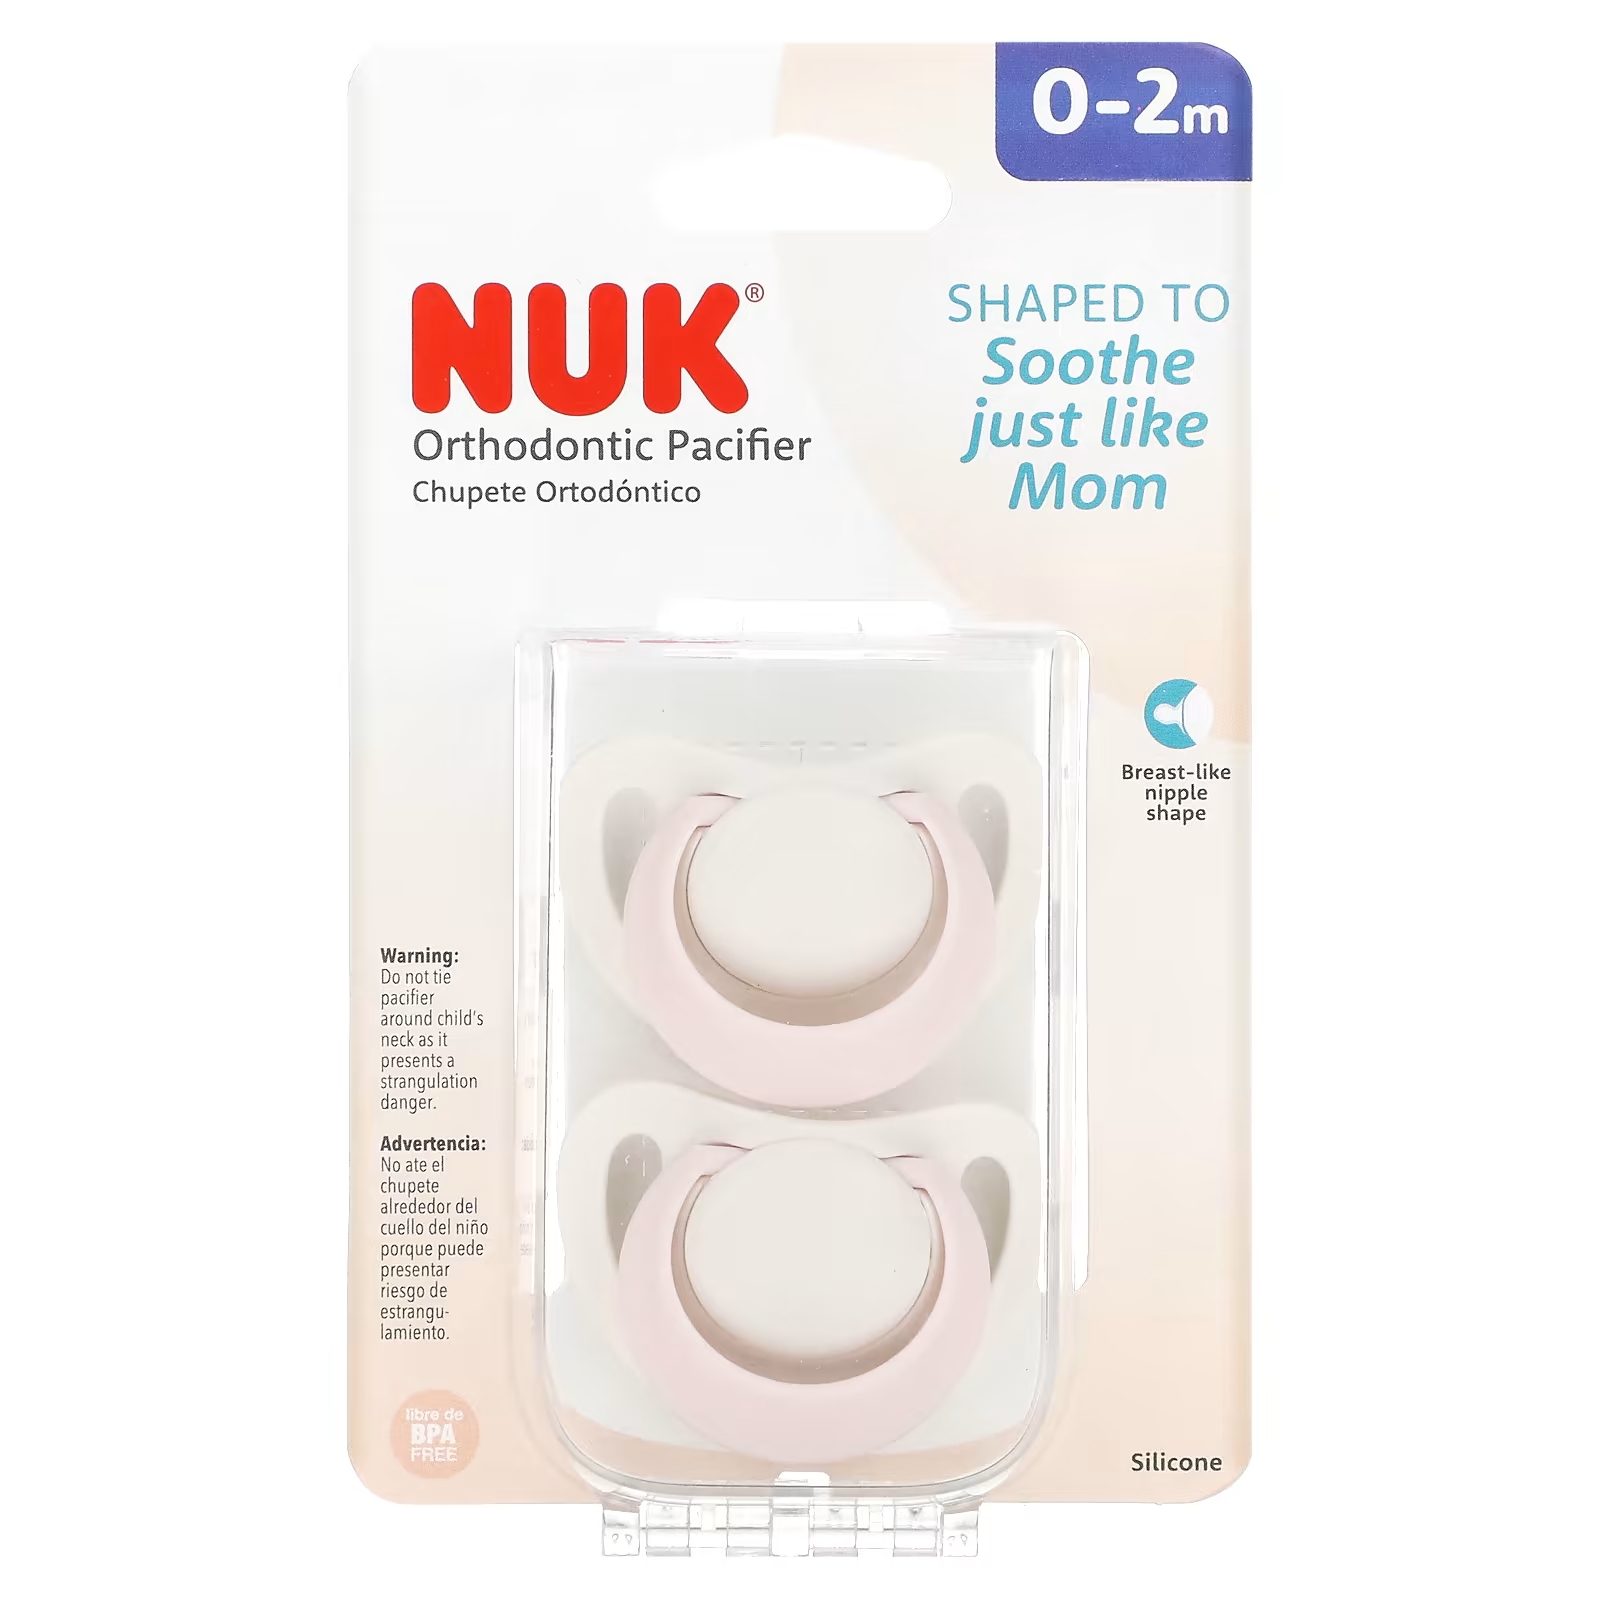 Соска ортодонтическая Nuk для детей 0–2 месяцев, розовый nuk orthodontic pacifier 0 2 months blue 2 pack